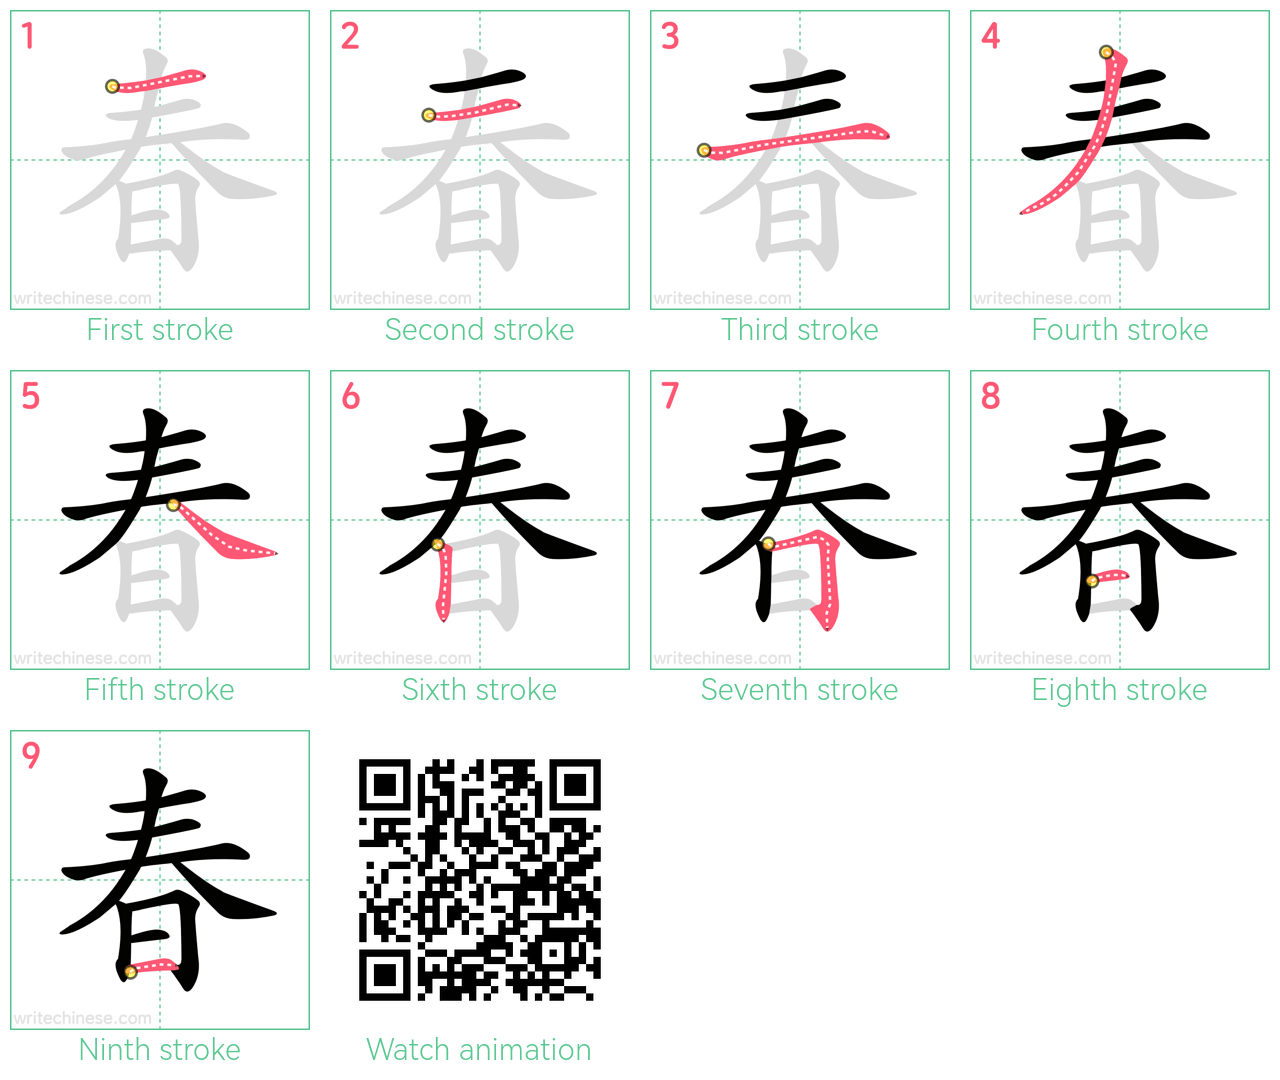 春 step-by-step stroke order diagrams